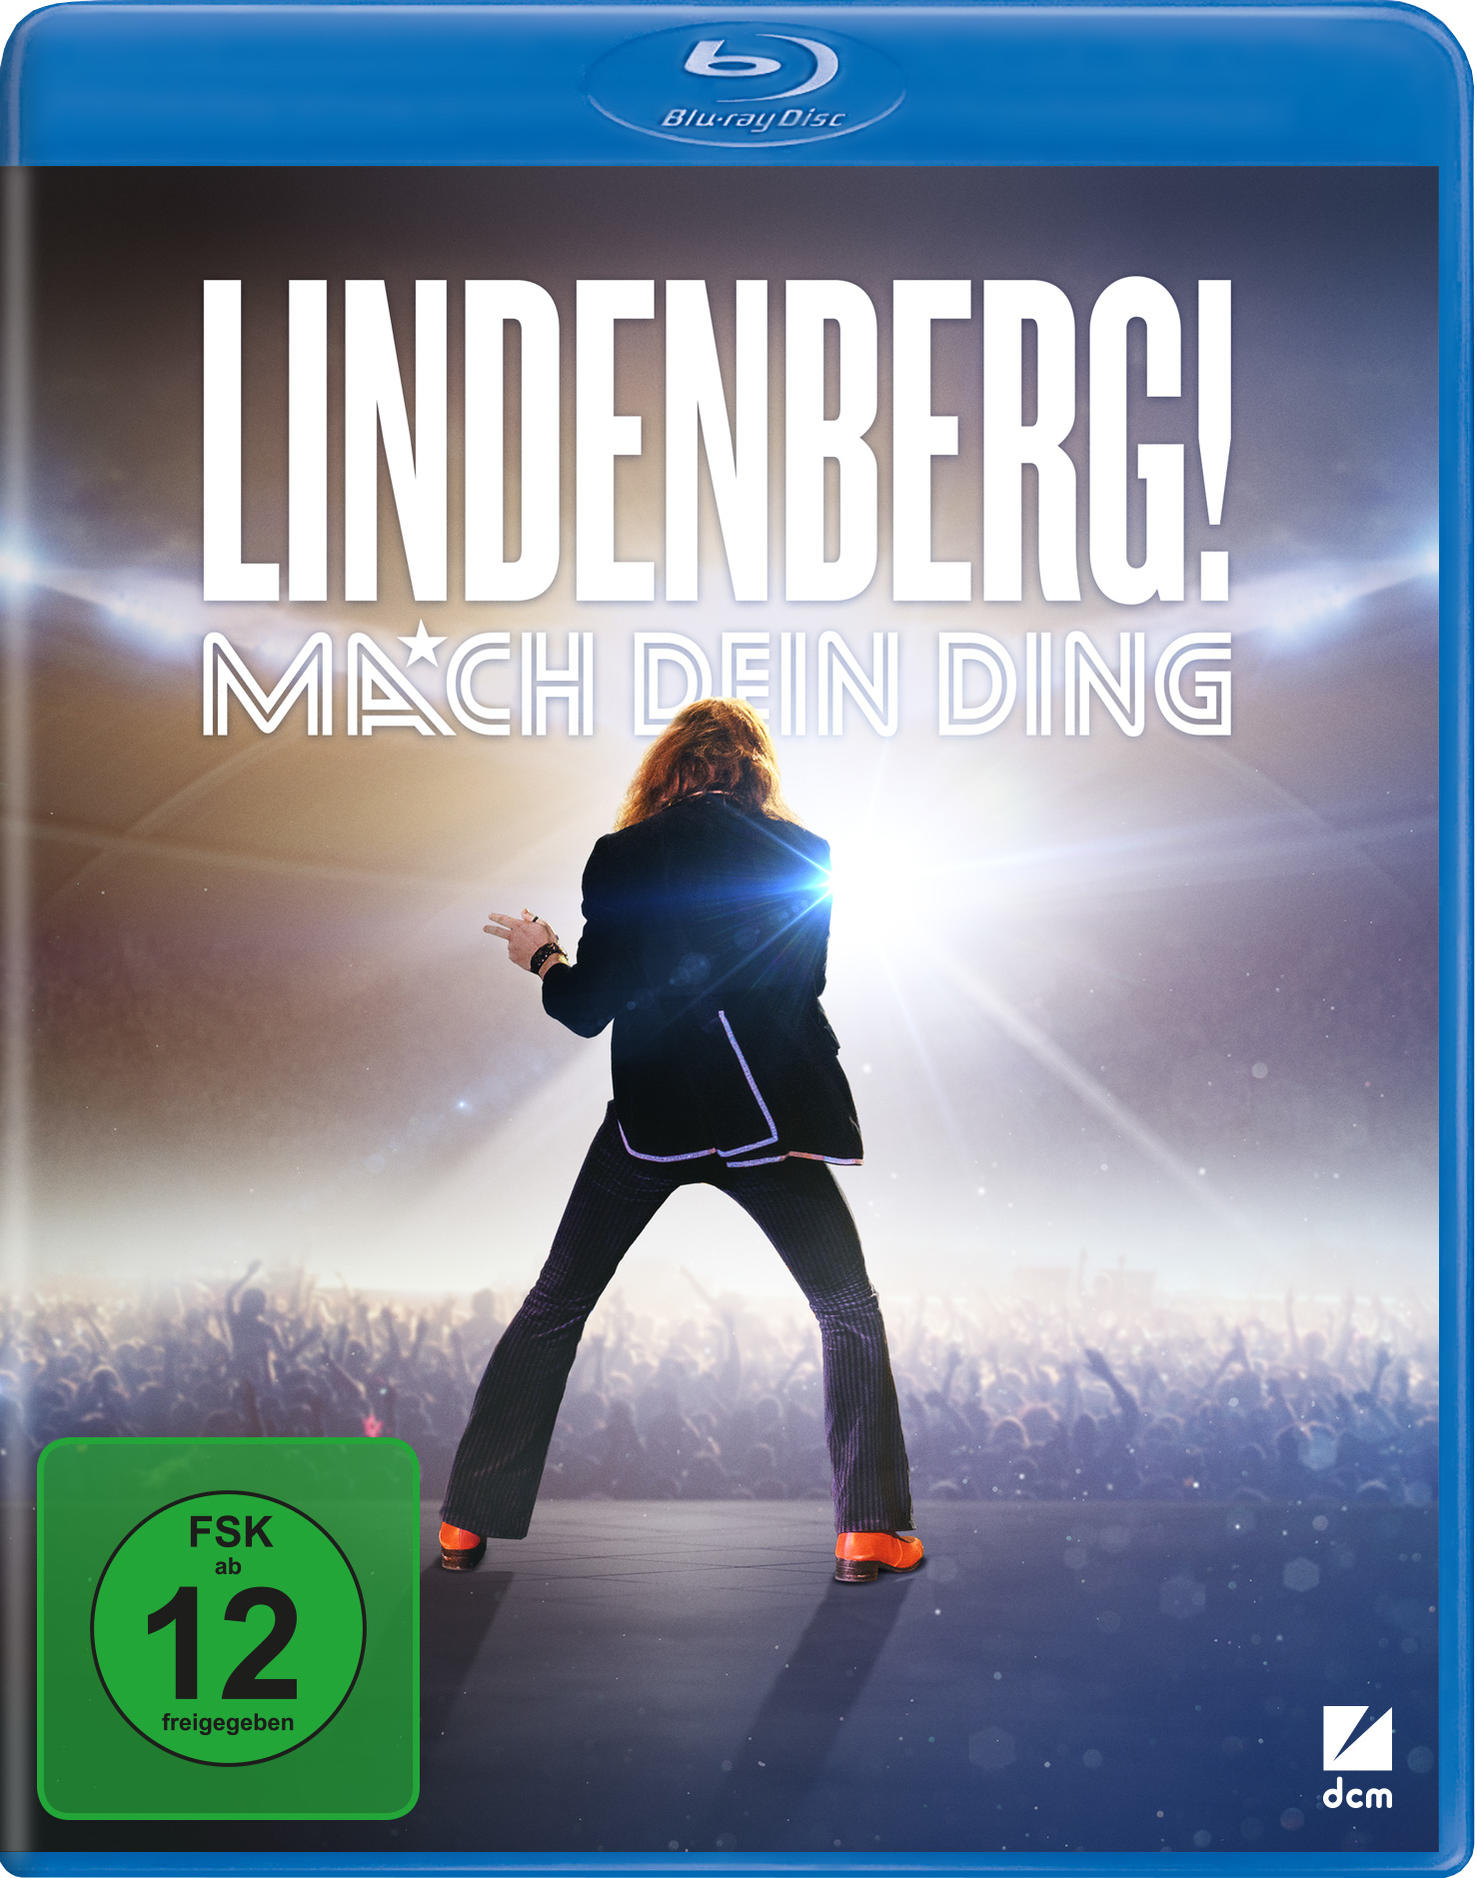 Lindenberg! Ding Blu-ray Mach dein